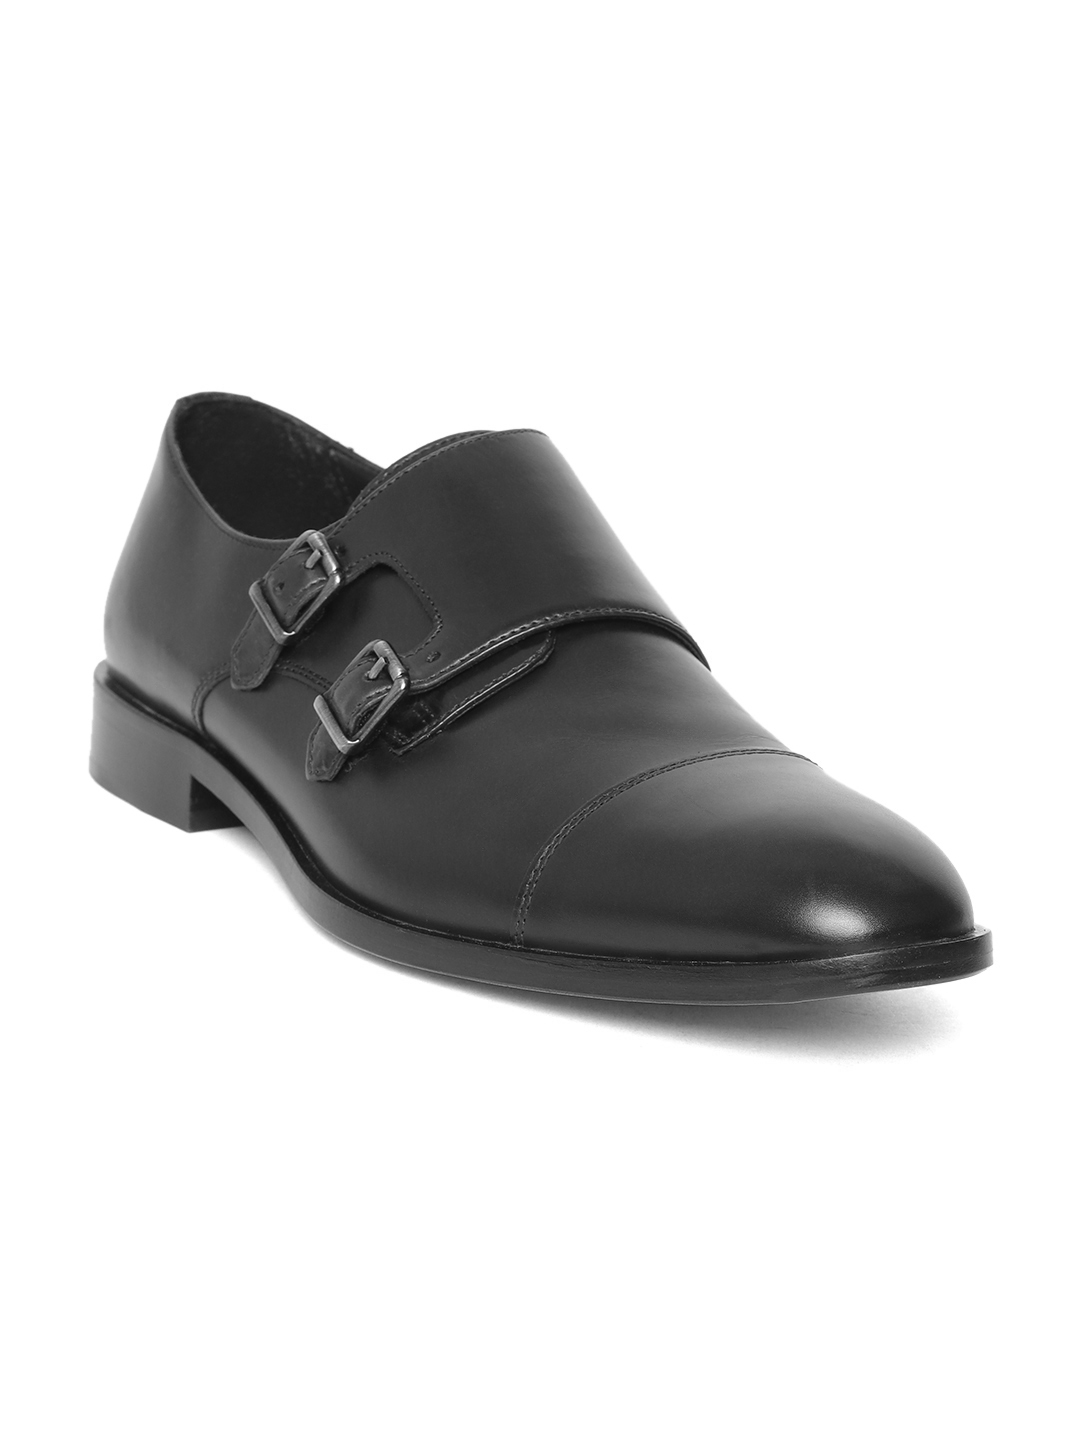 Ventilar torpe franja Buy Geox Men Black Leather Formal Monks - Formal Shoes for Men 10029399 |  Myntra